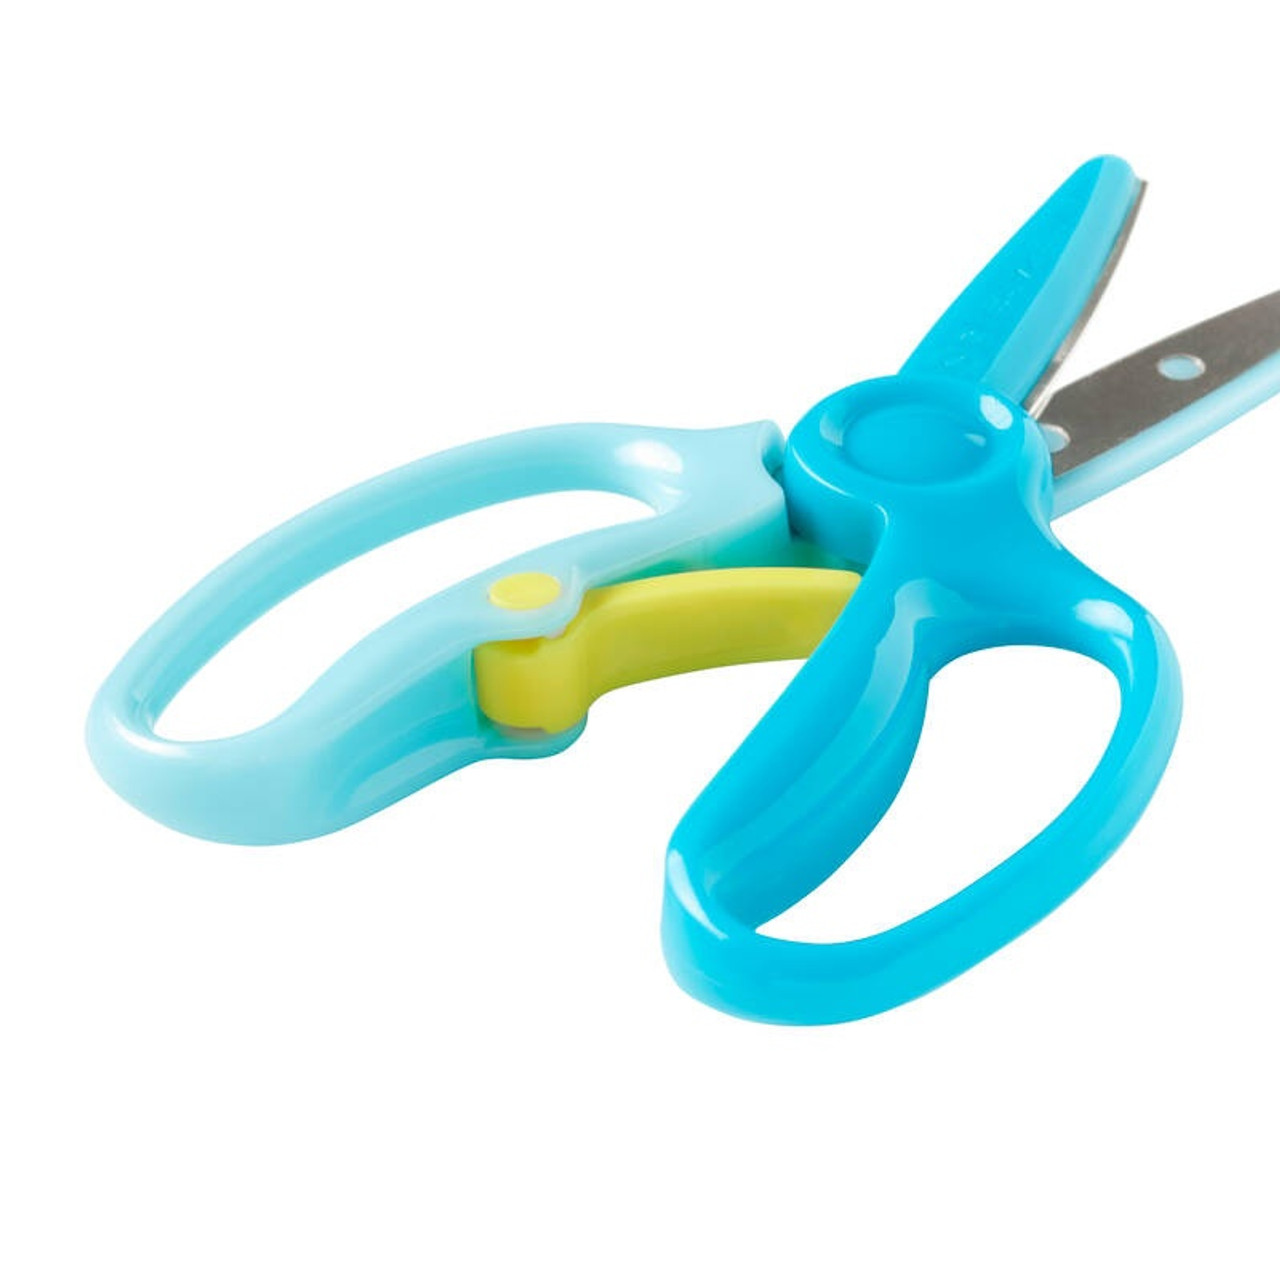 Fiskars Preschool Training Scissors